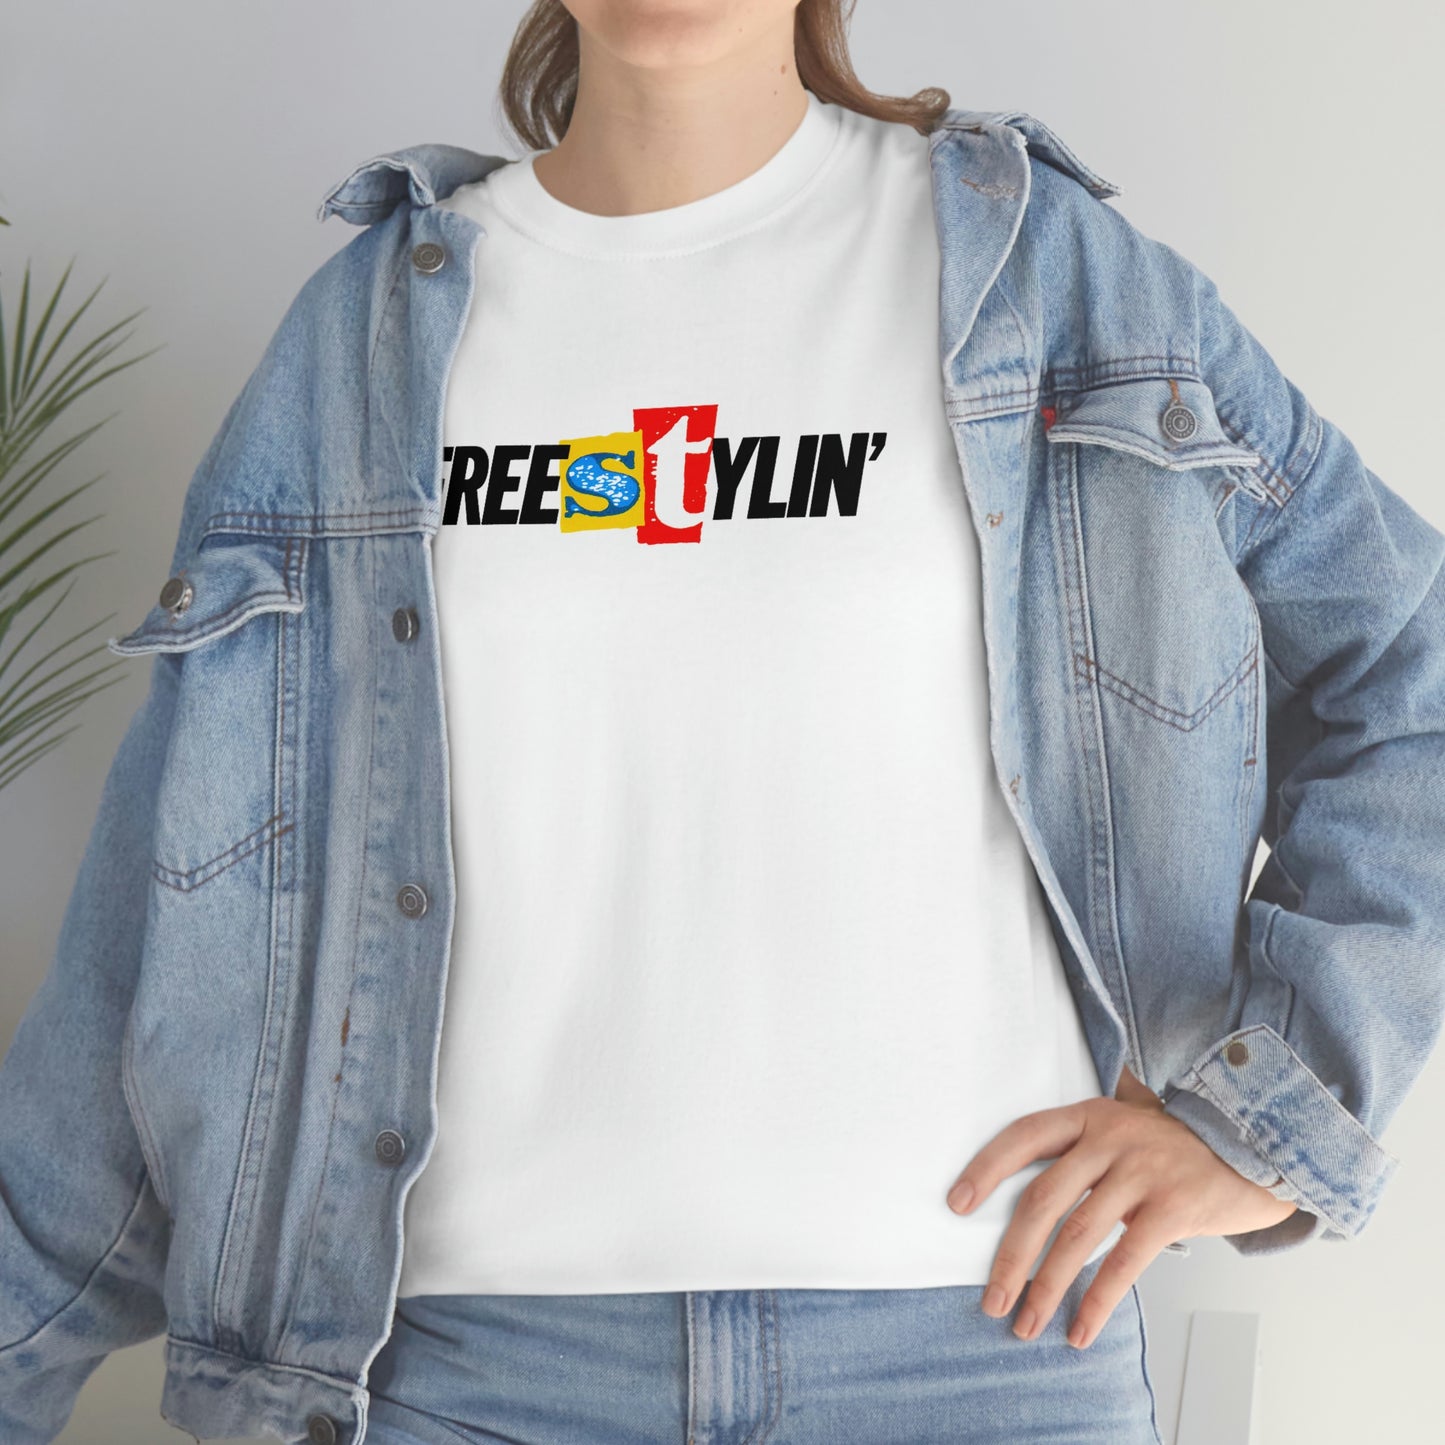 Freestylin' Magazine T-Shirt